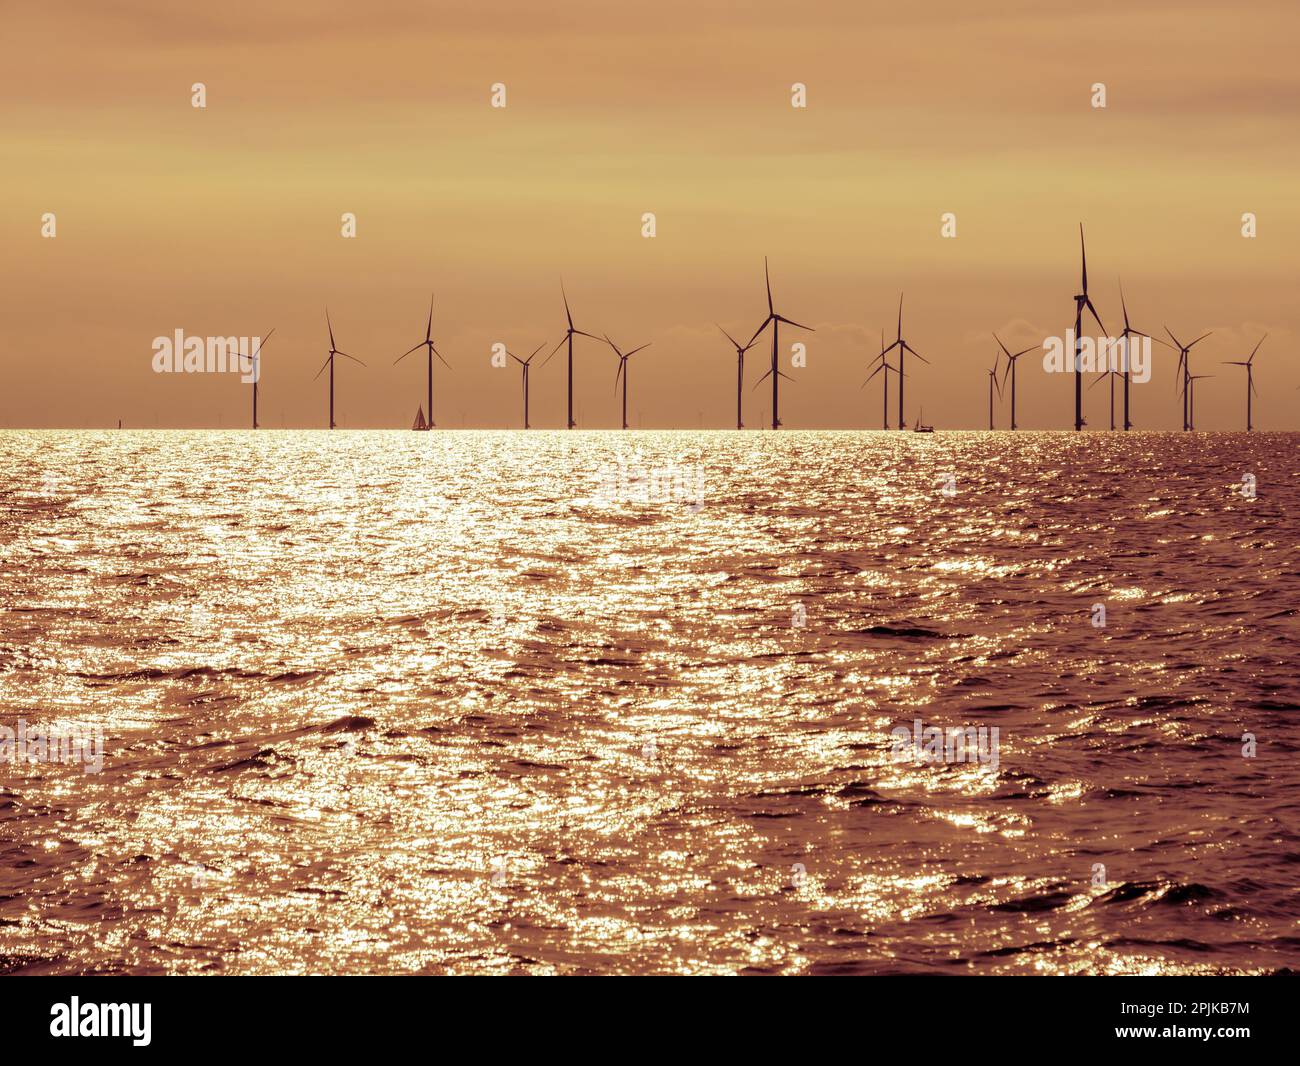 Backlit view of wind park Fryslan in IJsselmeer lake, Netherlands Stock Photo